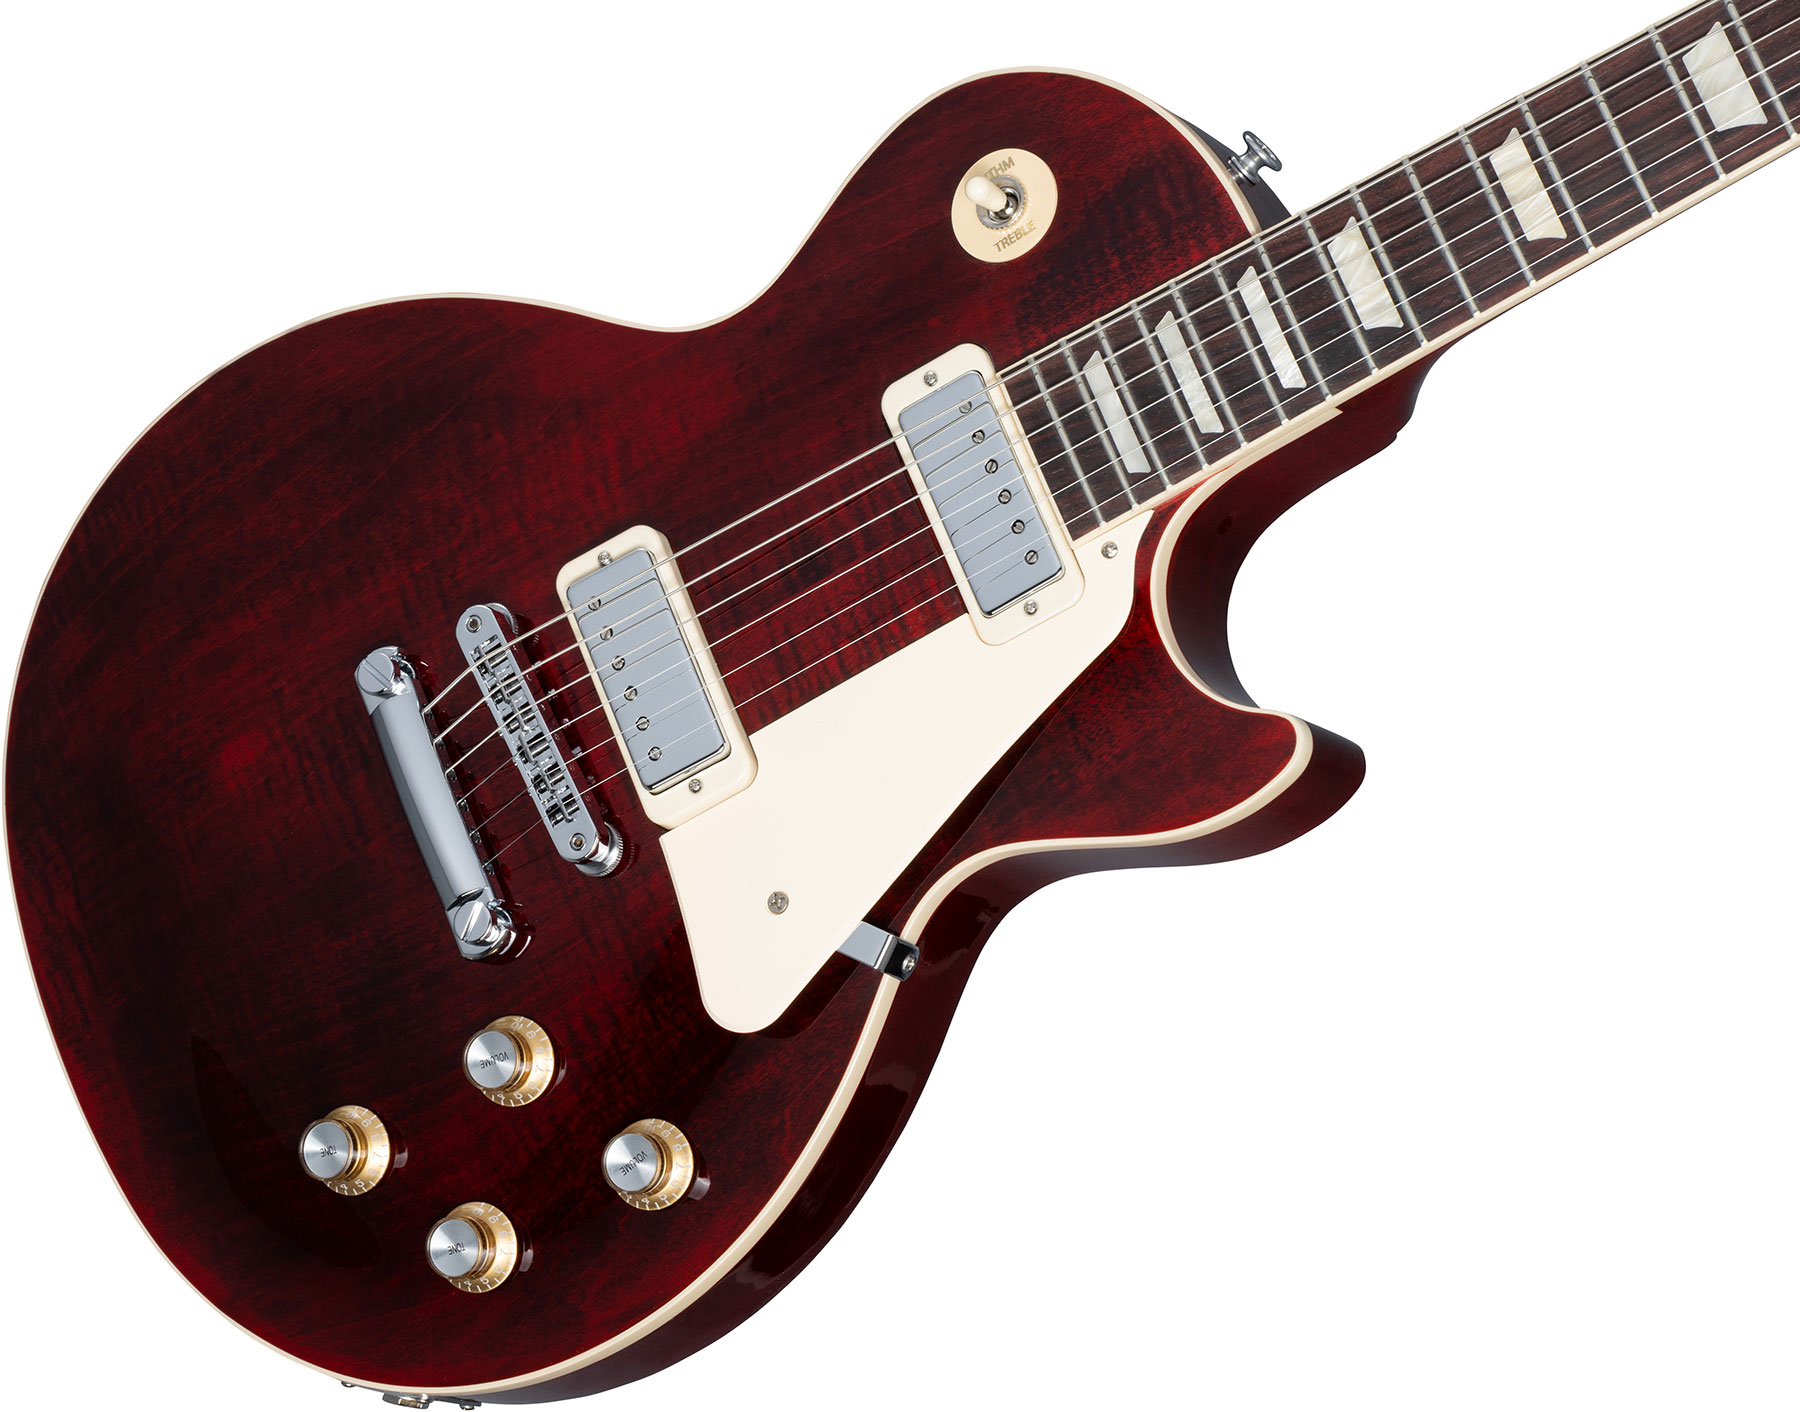 Gibson Les Paul Deluxe 70s Plain Top Original 2mh Ht Rw - Wine Red - Enkel gesneden elektrische gitaar - Variation 3